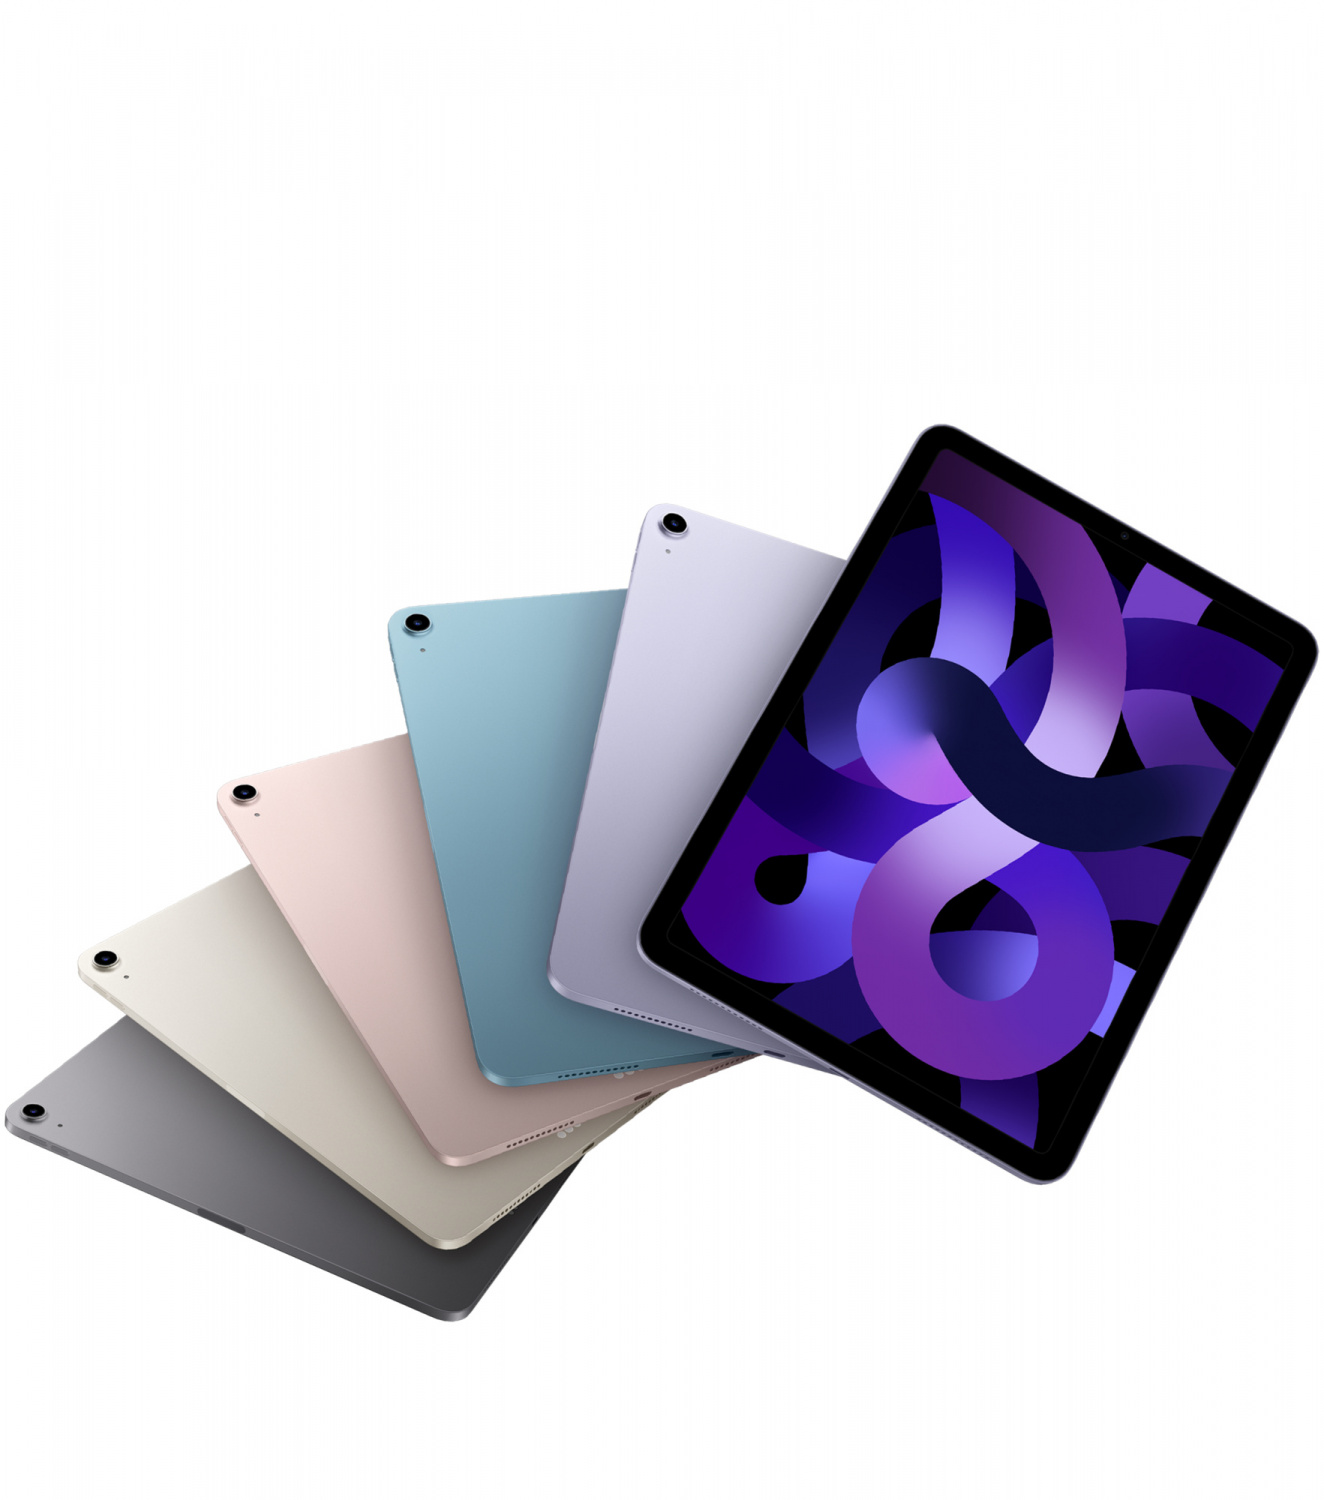 Купить планшет apple ipad air 5 поколение m1 2022 wi-fi + cellular 64 гб, starlight Apple iPad Air в официальном магазине Apple, Samsung, Xiaomi. iPixel.ru Купить, заказ, кредит, рассрочка, отзывы,  характеристики, цена,  фотографии, в подарок.